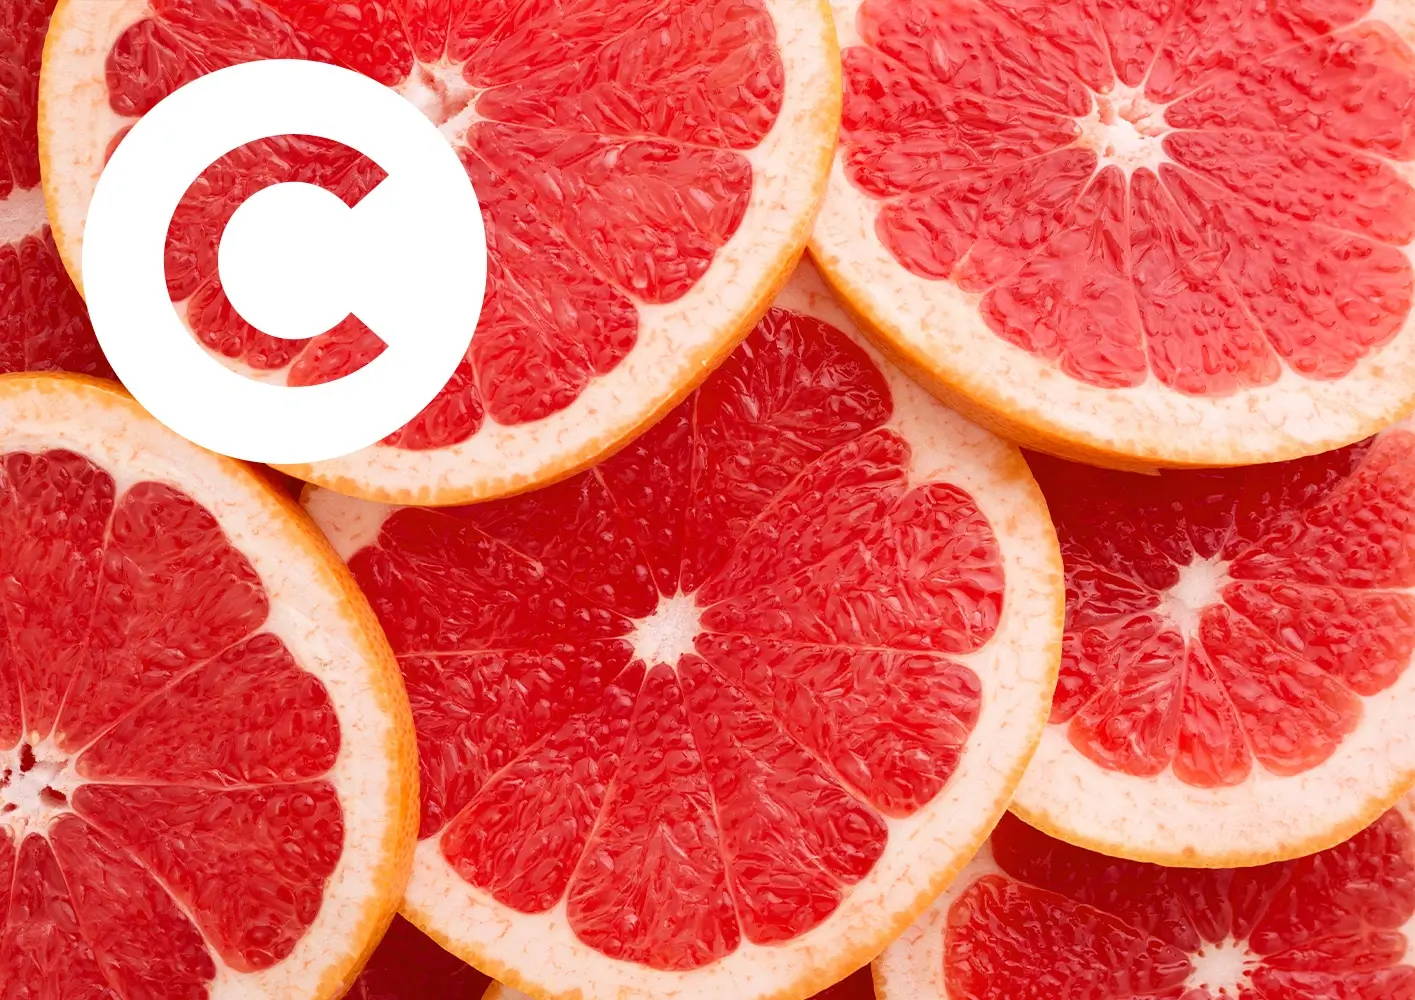 Letter C / blood oranges.